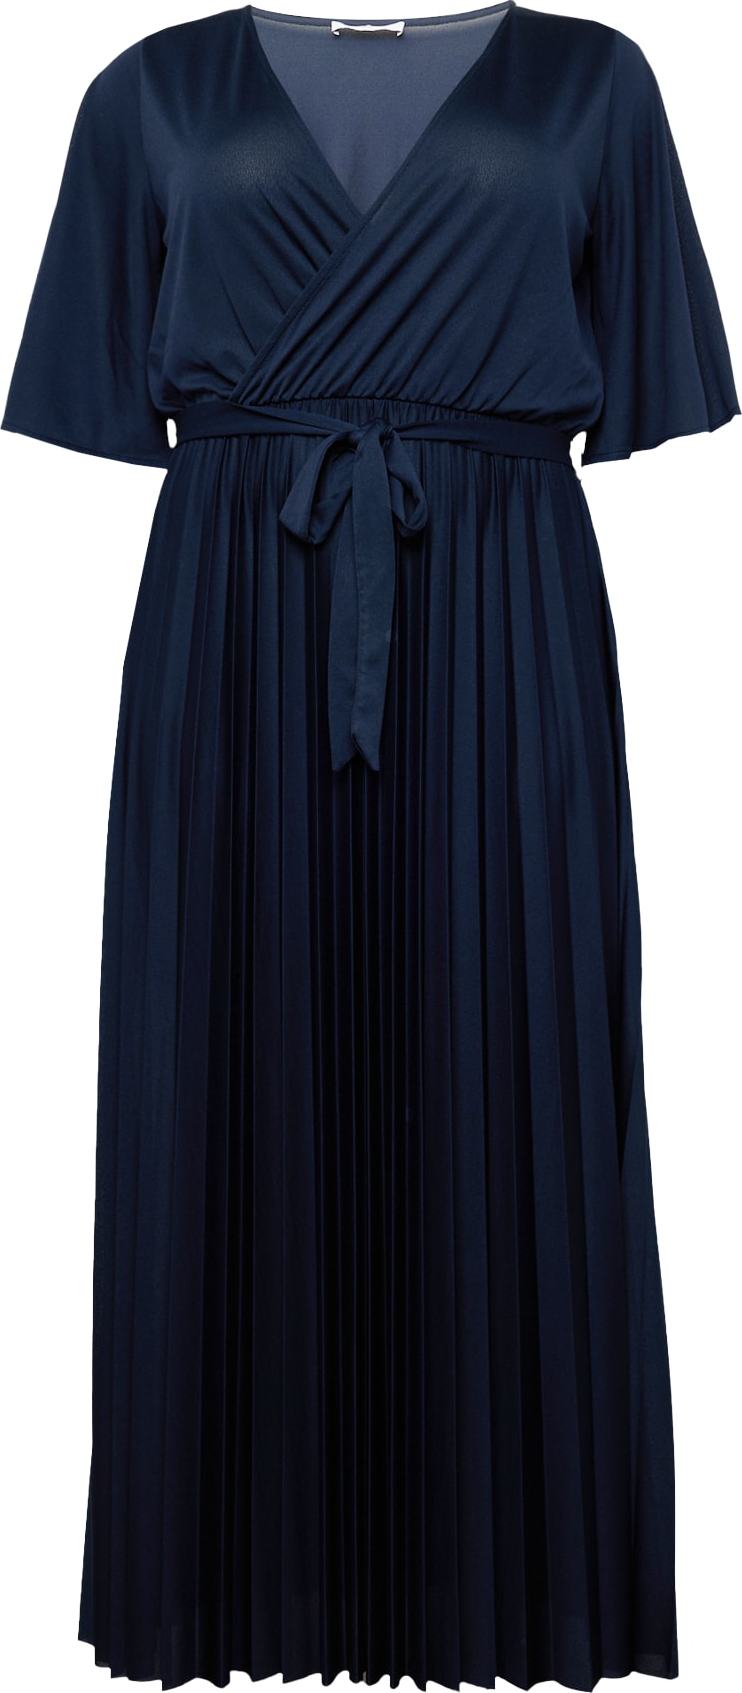 Společenské šaty 'Gemma' ABOUT YOU Curvy tmavě modrá